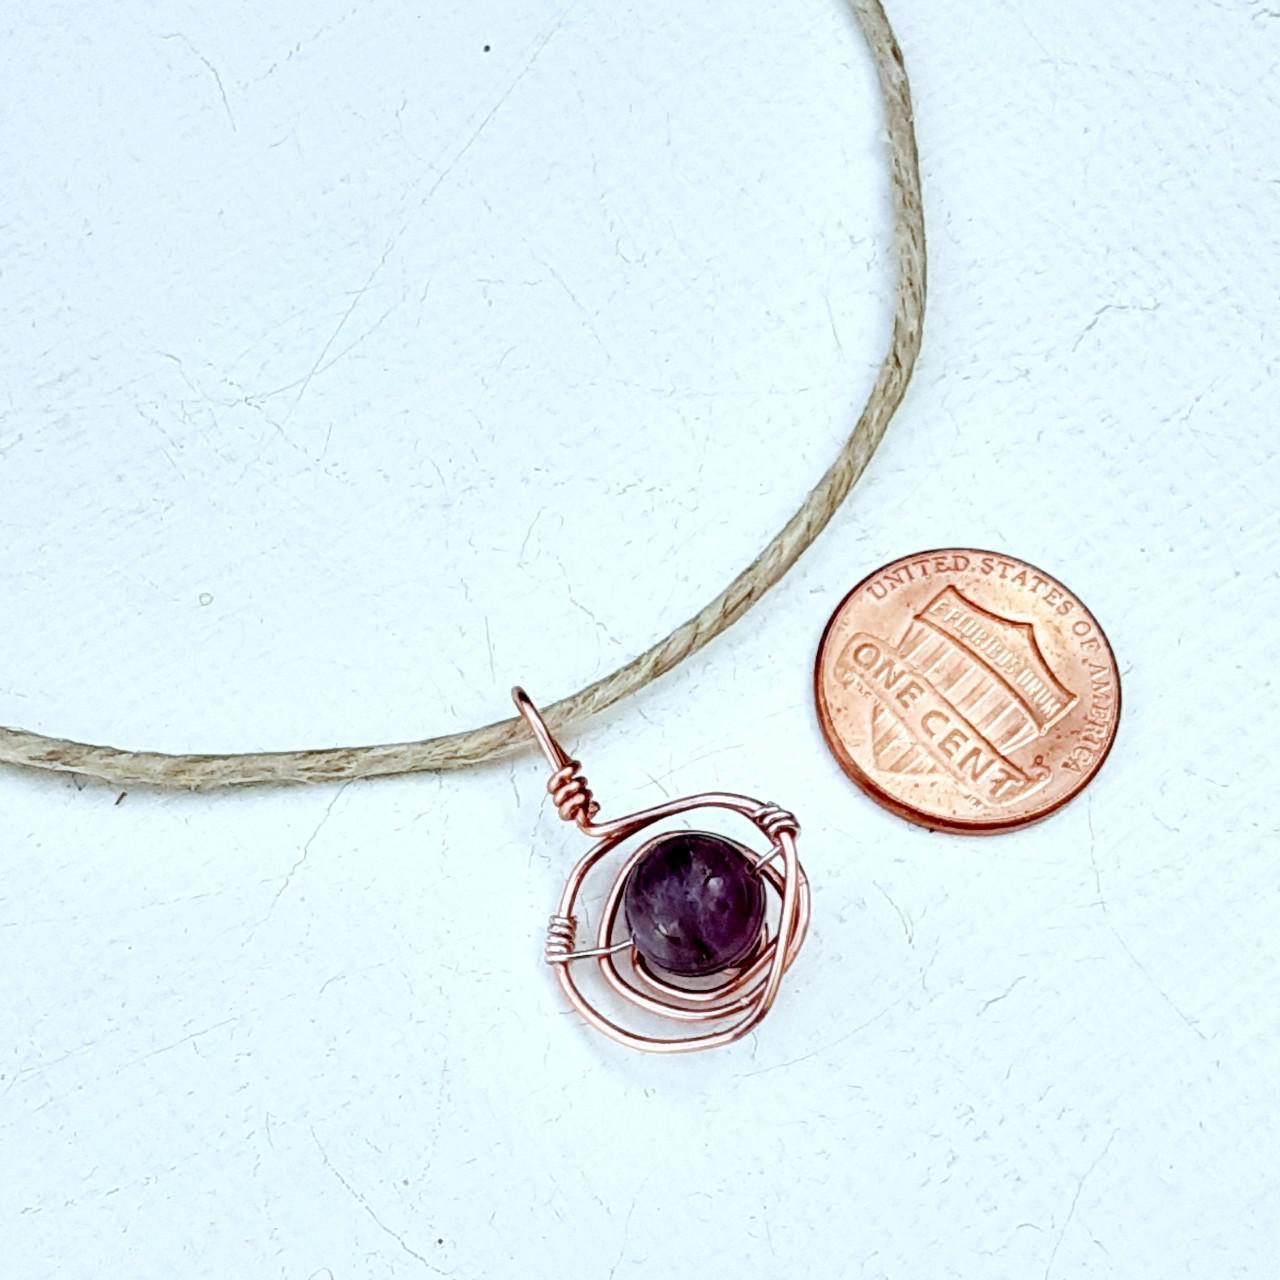 Product Image 3 - Hemp choker necklace
Copper swirl setting